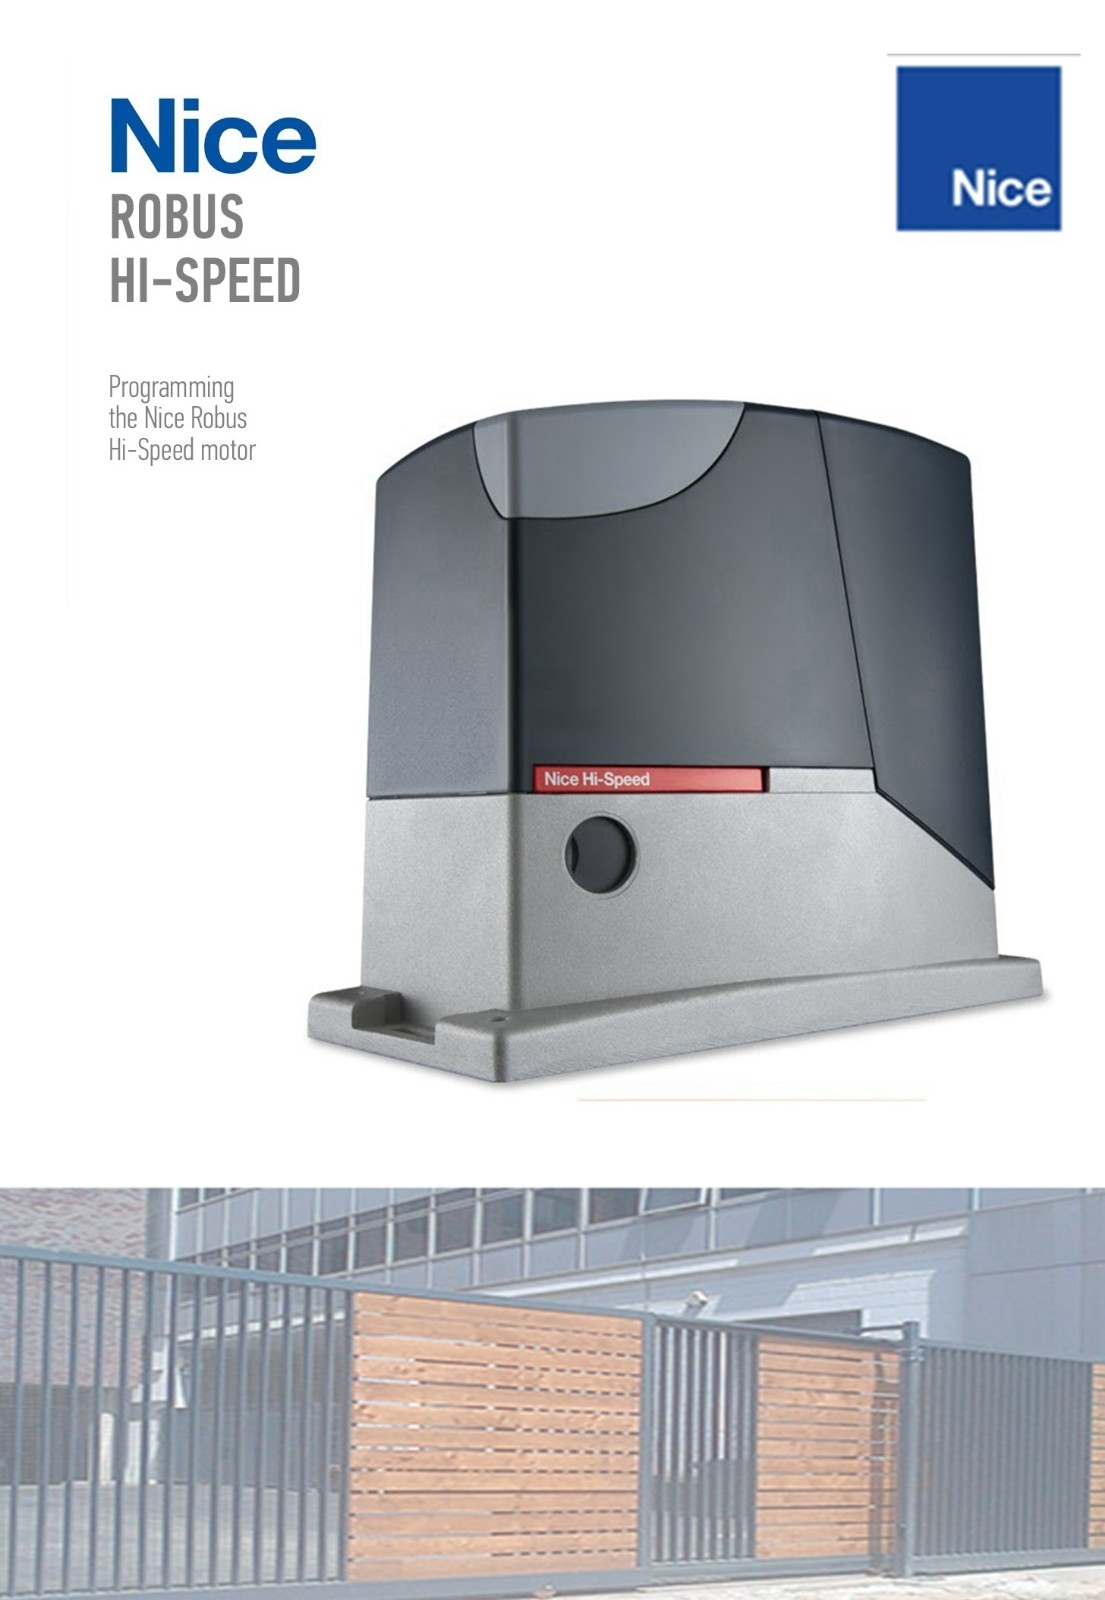 NiceRobus Hi-Speed Sliding Gate Motor NiceRobus Autogate System Sliding Gate System Catalog & Brochure